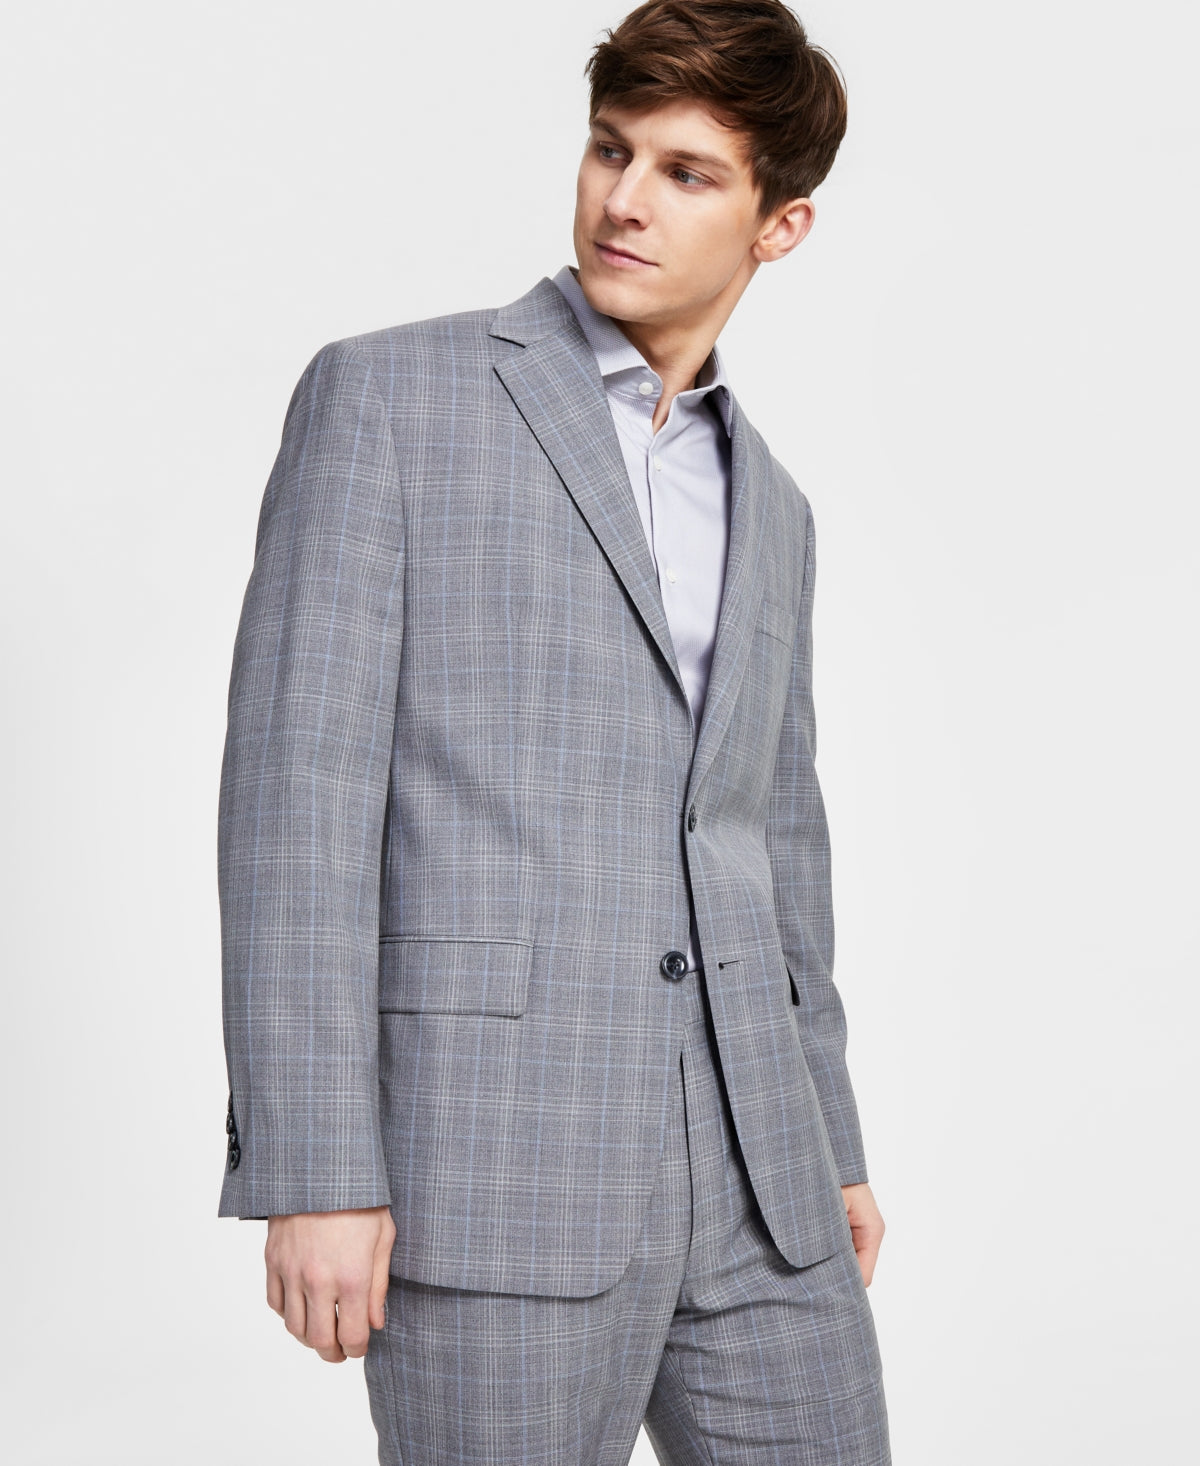 MICHAEL KORS Men's Suit Jacket 44S Classic Fit Wool-Blend Grey Blue Plaid